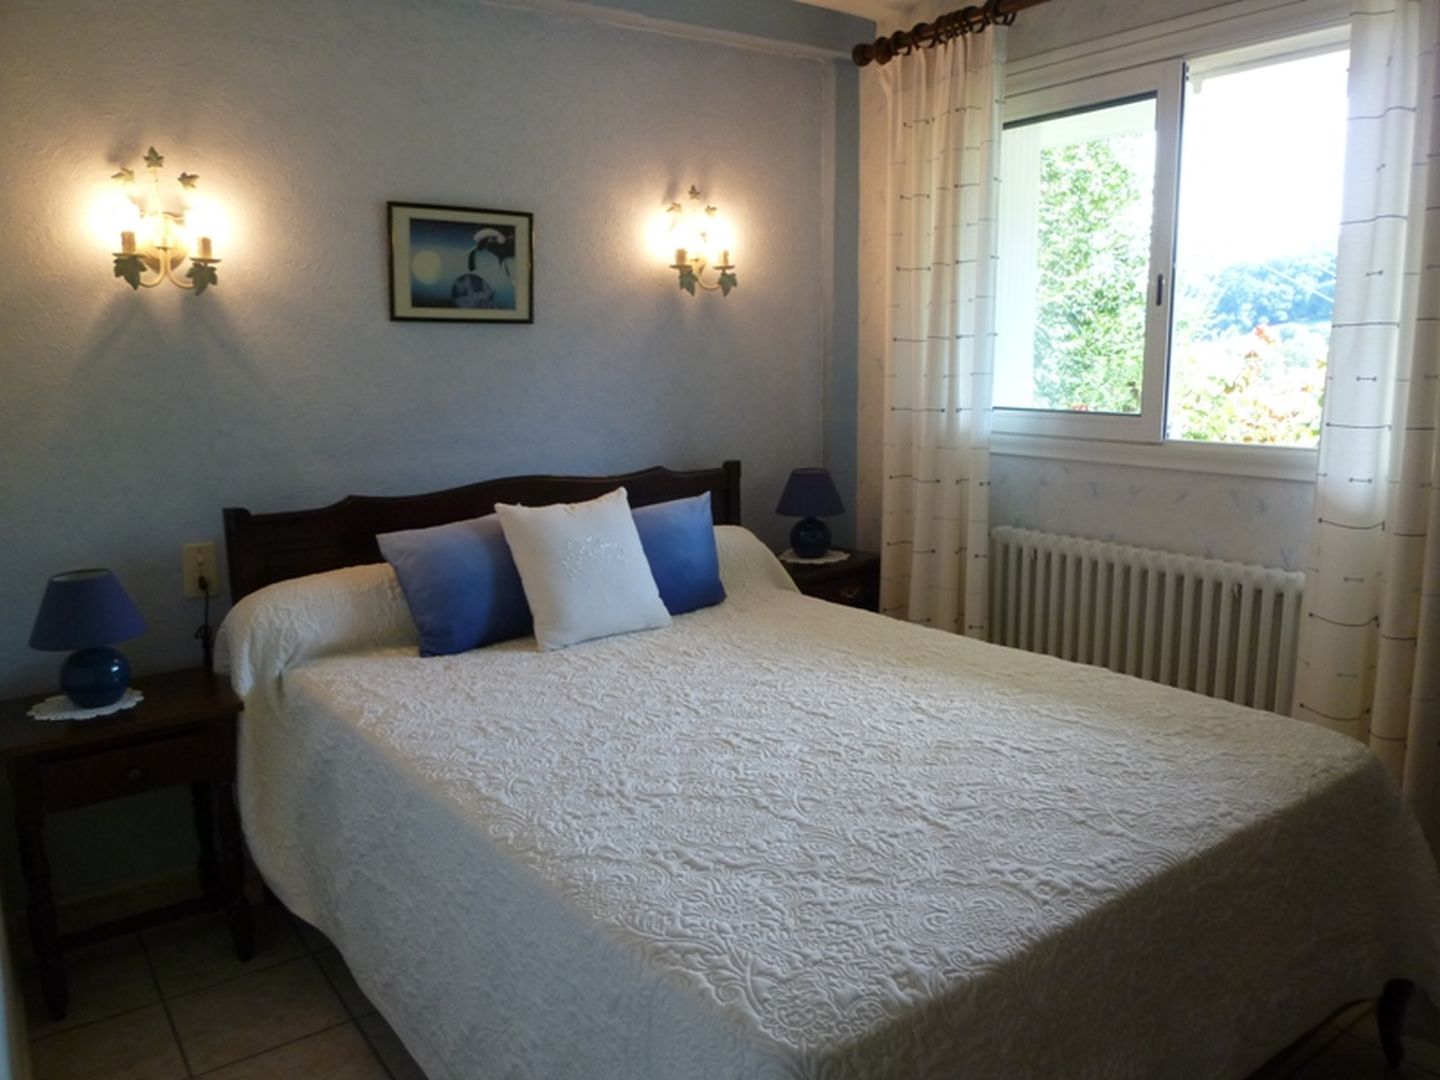 Location Zaldua - 13 - Chambre lit double bleu - St Etienne de Baïgorry 